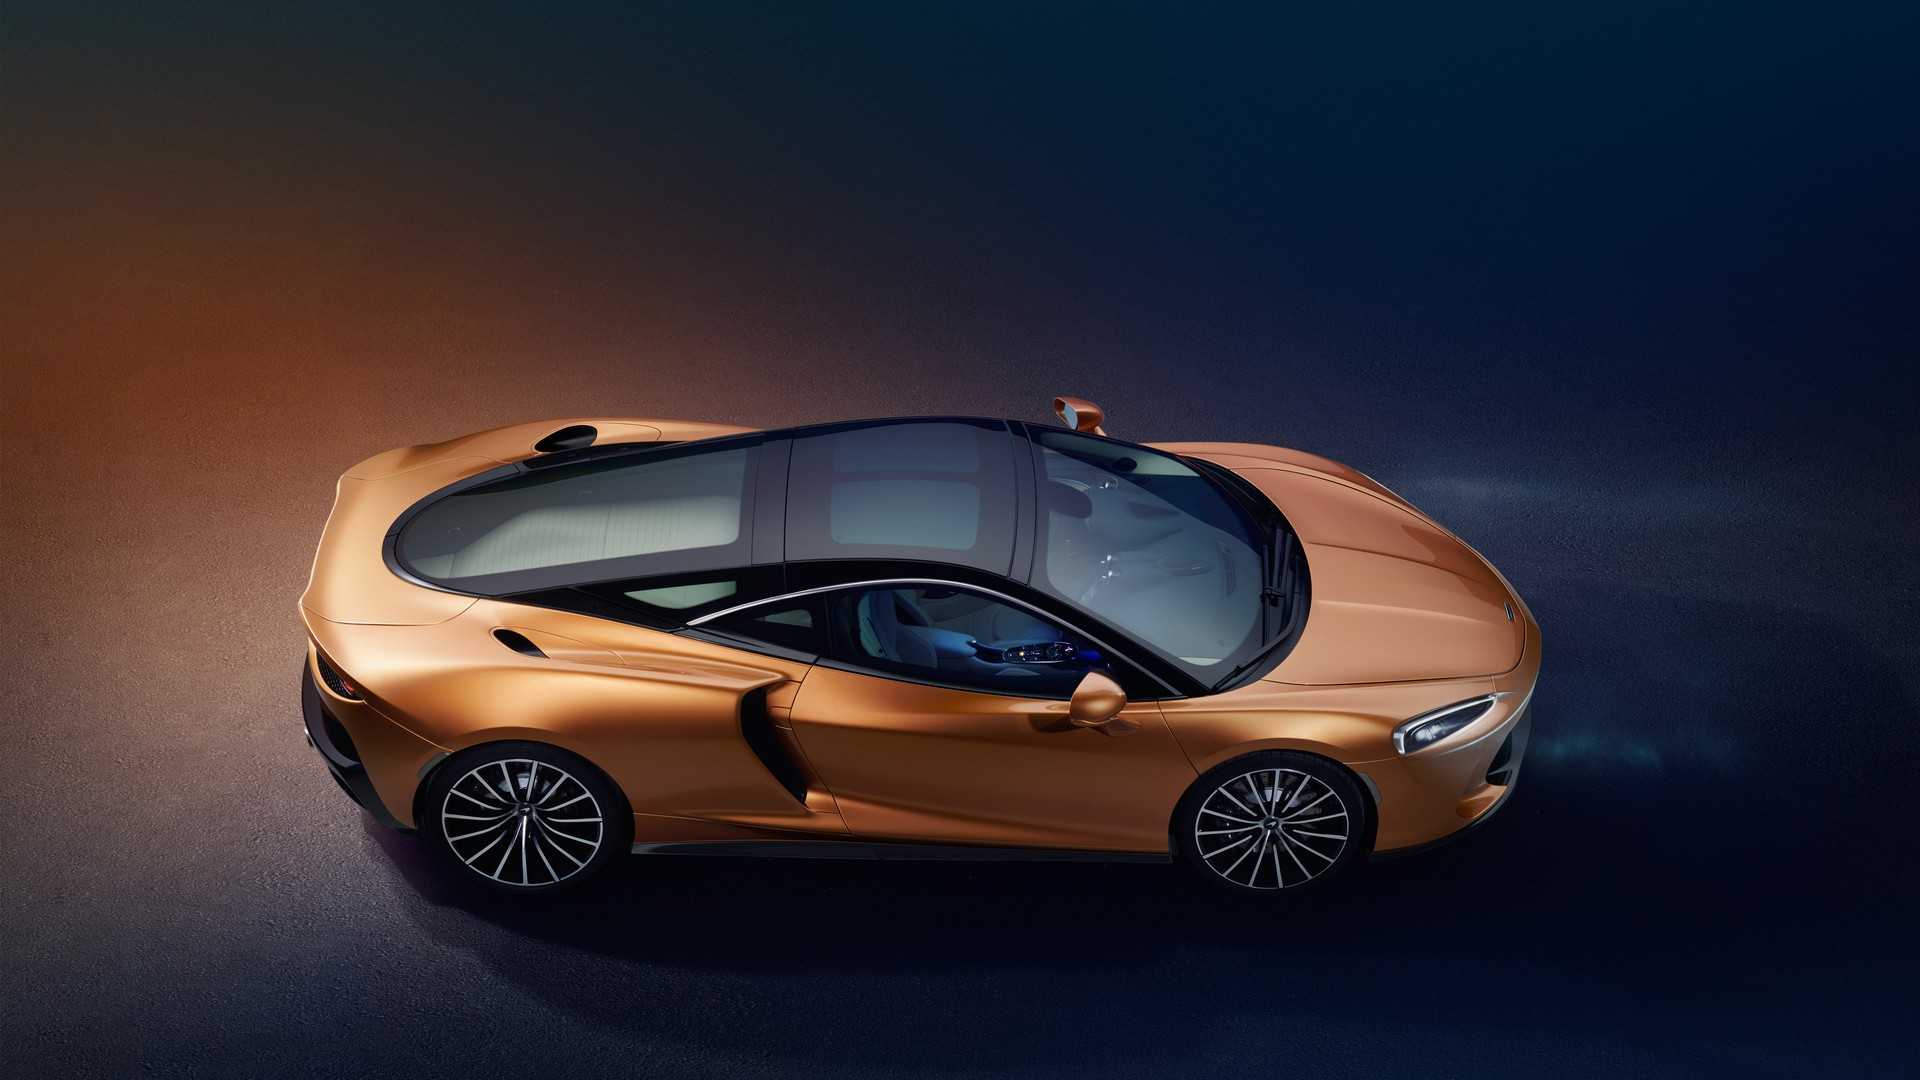 McLaren GT: lujoso, práctico y muy rápido, ¡llega el Gran Turismo definitivo!